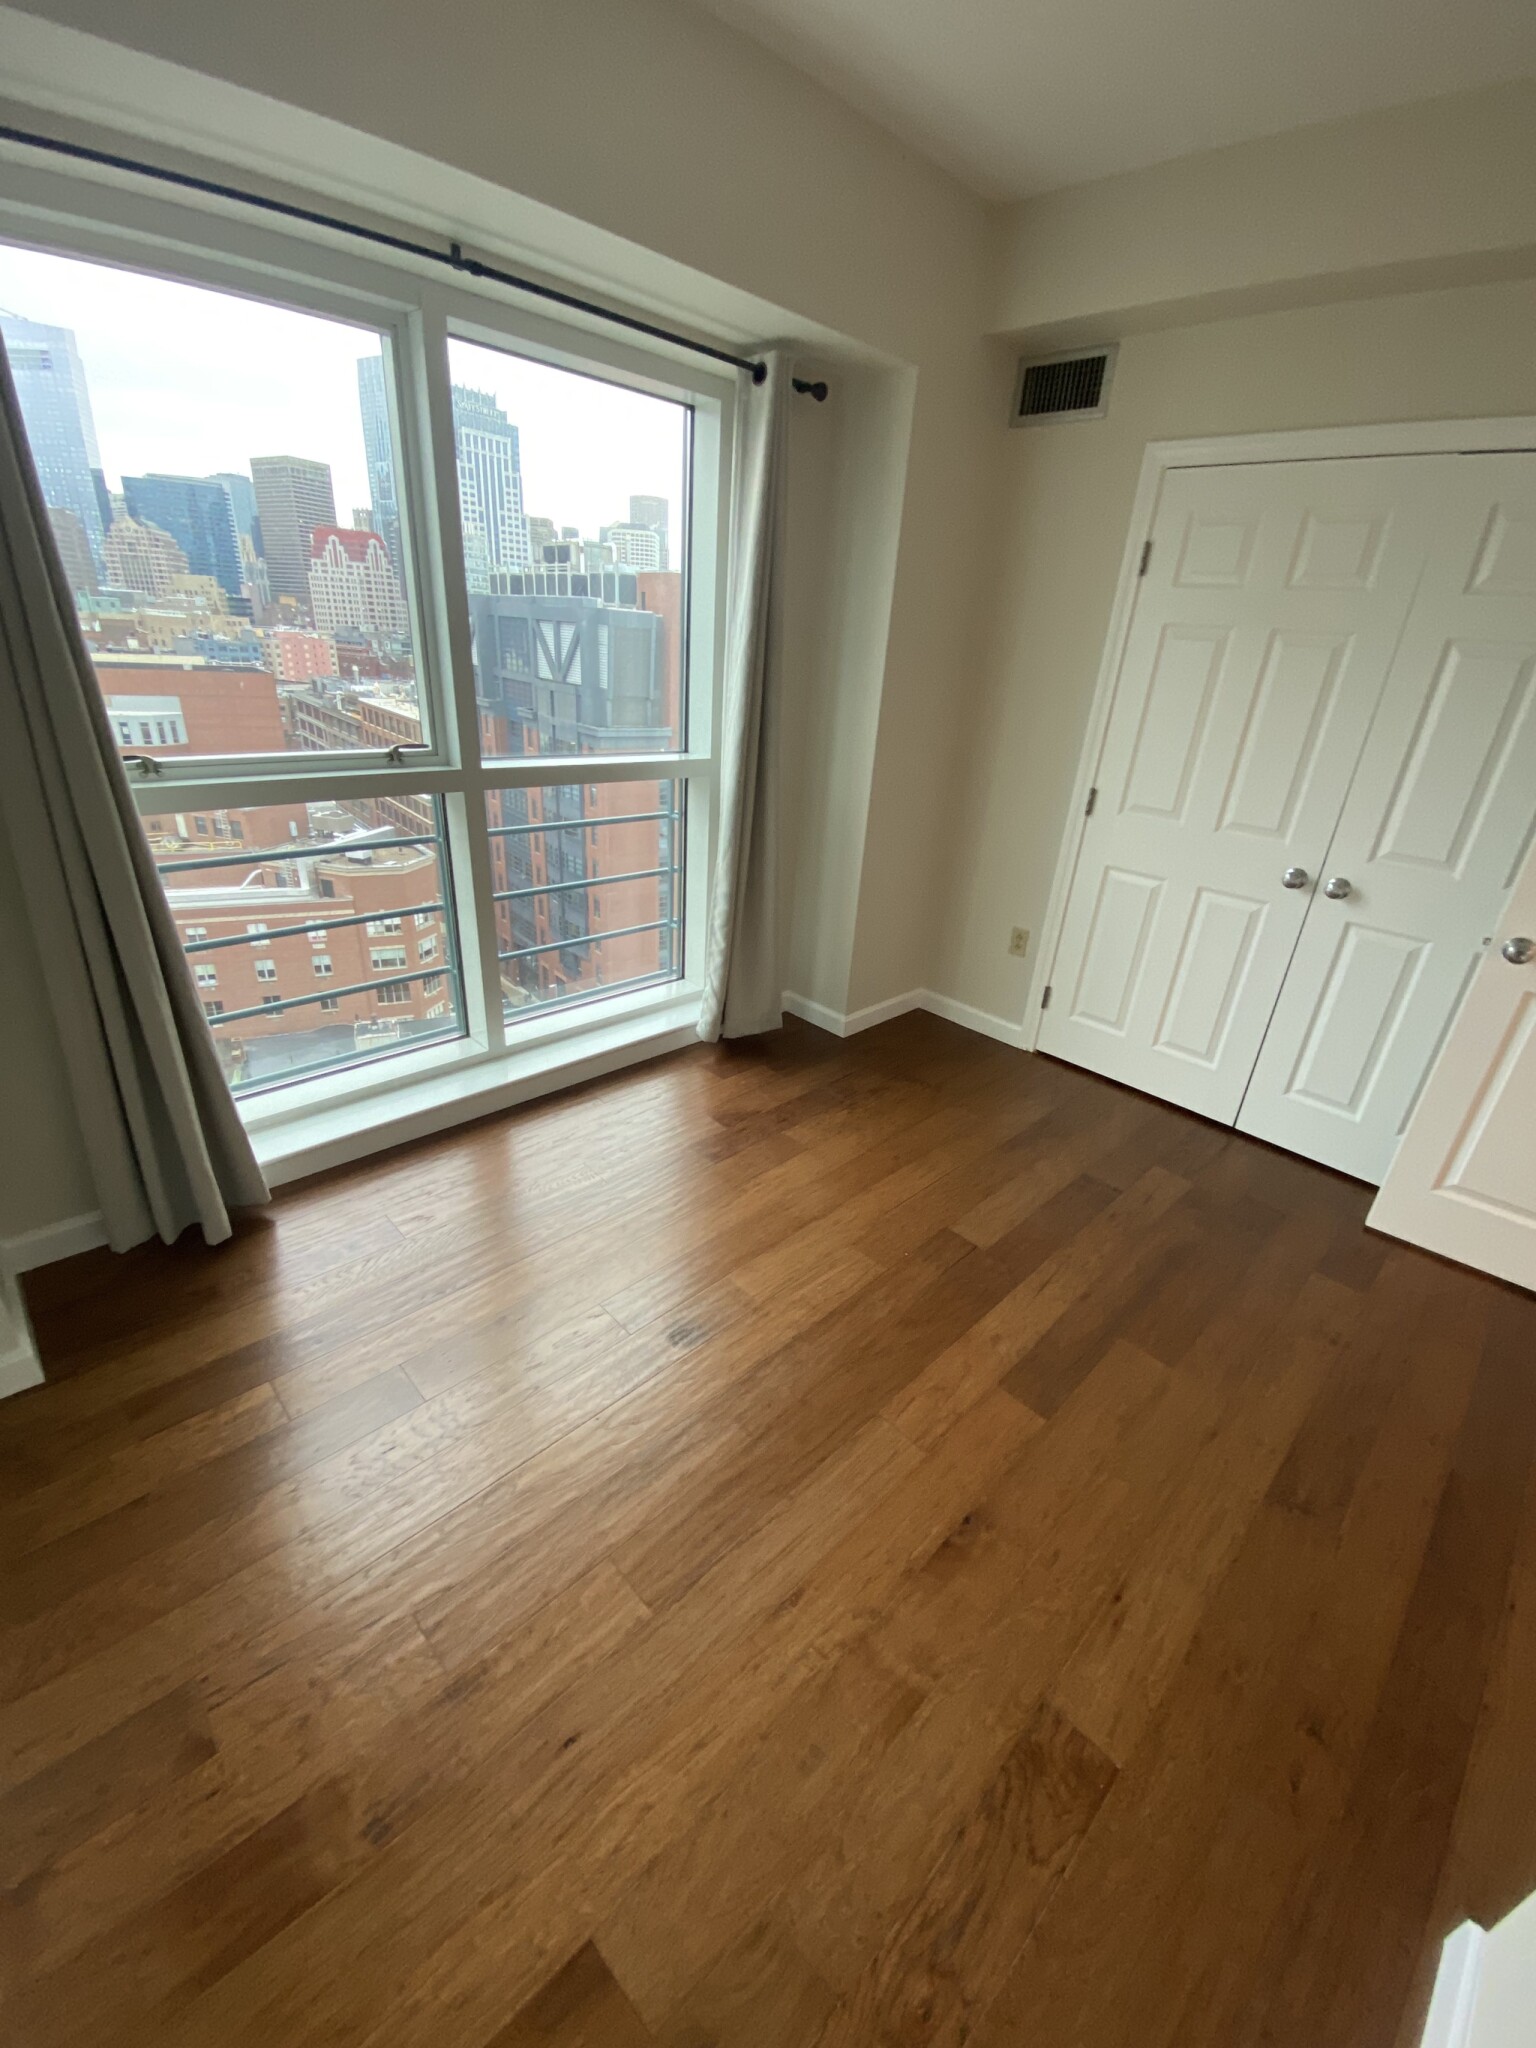 Photos of apartment on Nassau St.,Boston MA 02111